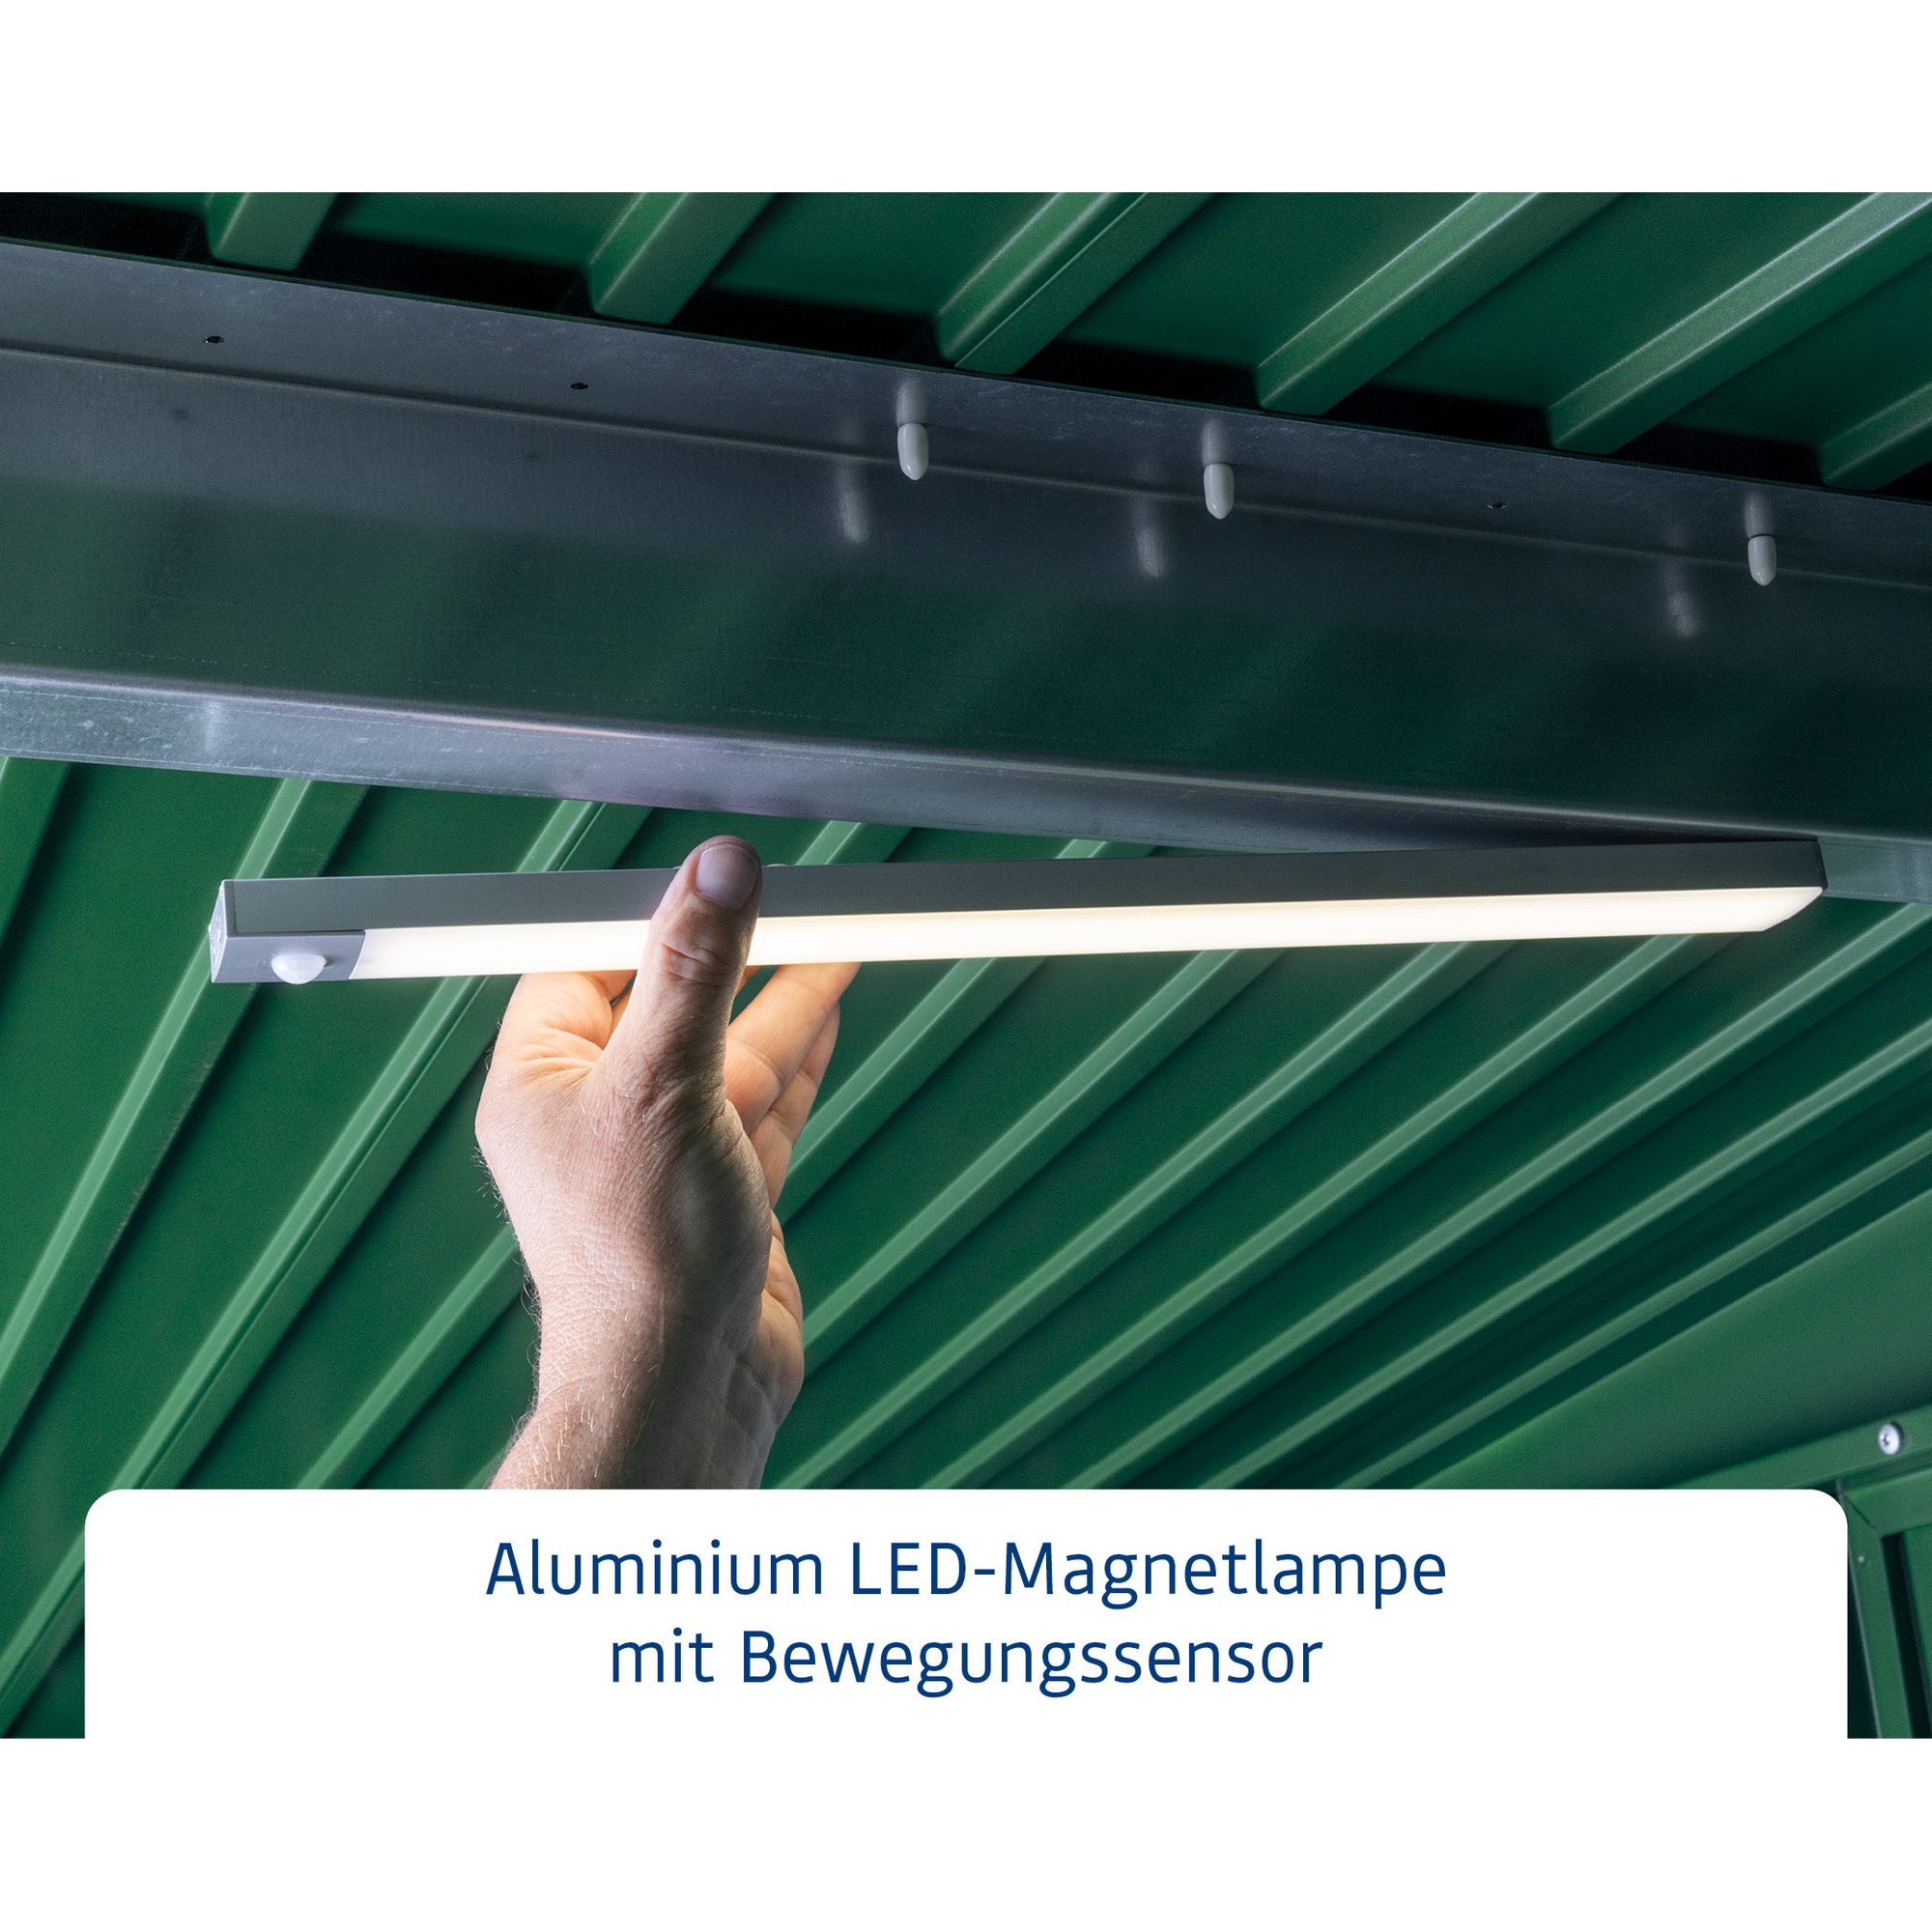 LED-Magnetleuchte mit Bewegungssensor 43 x 3,4 x 1,6 cm + product picture